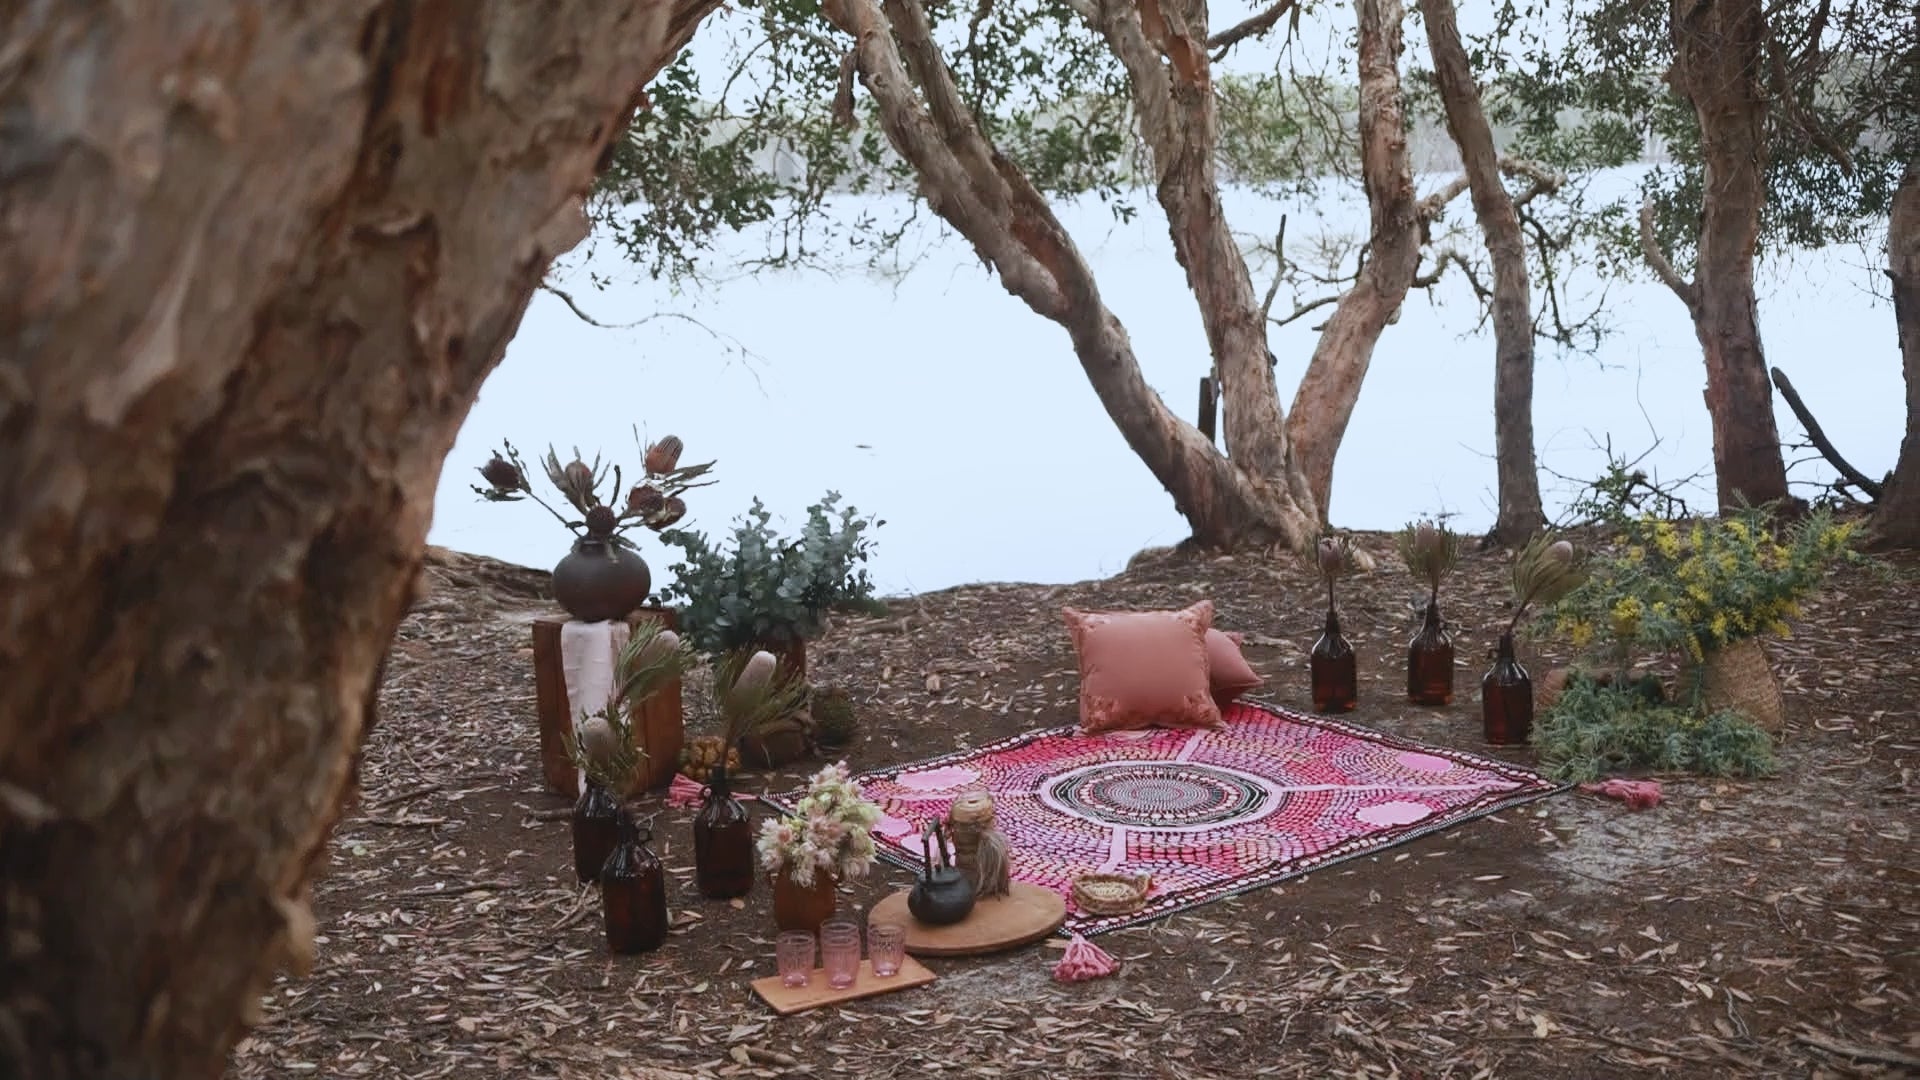 wandering folk - miimi & jiinda collab picnic rug - miinggi jaantmili